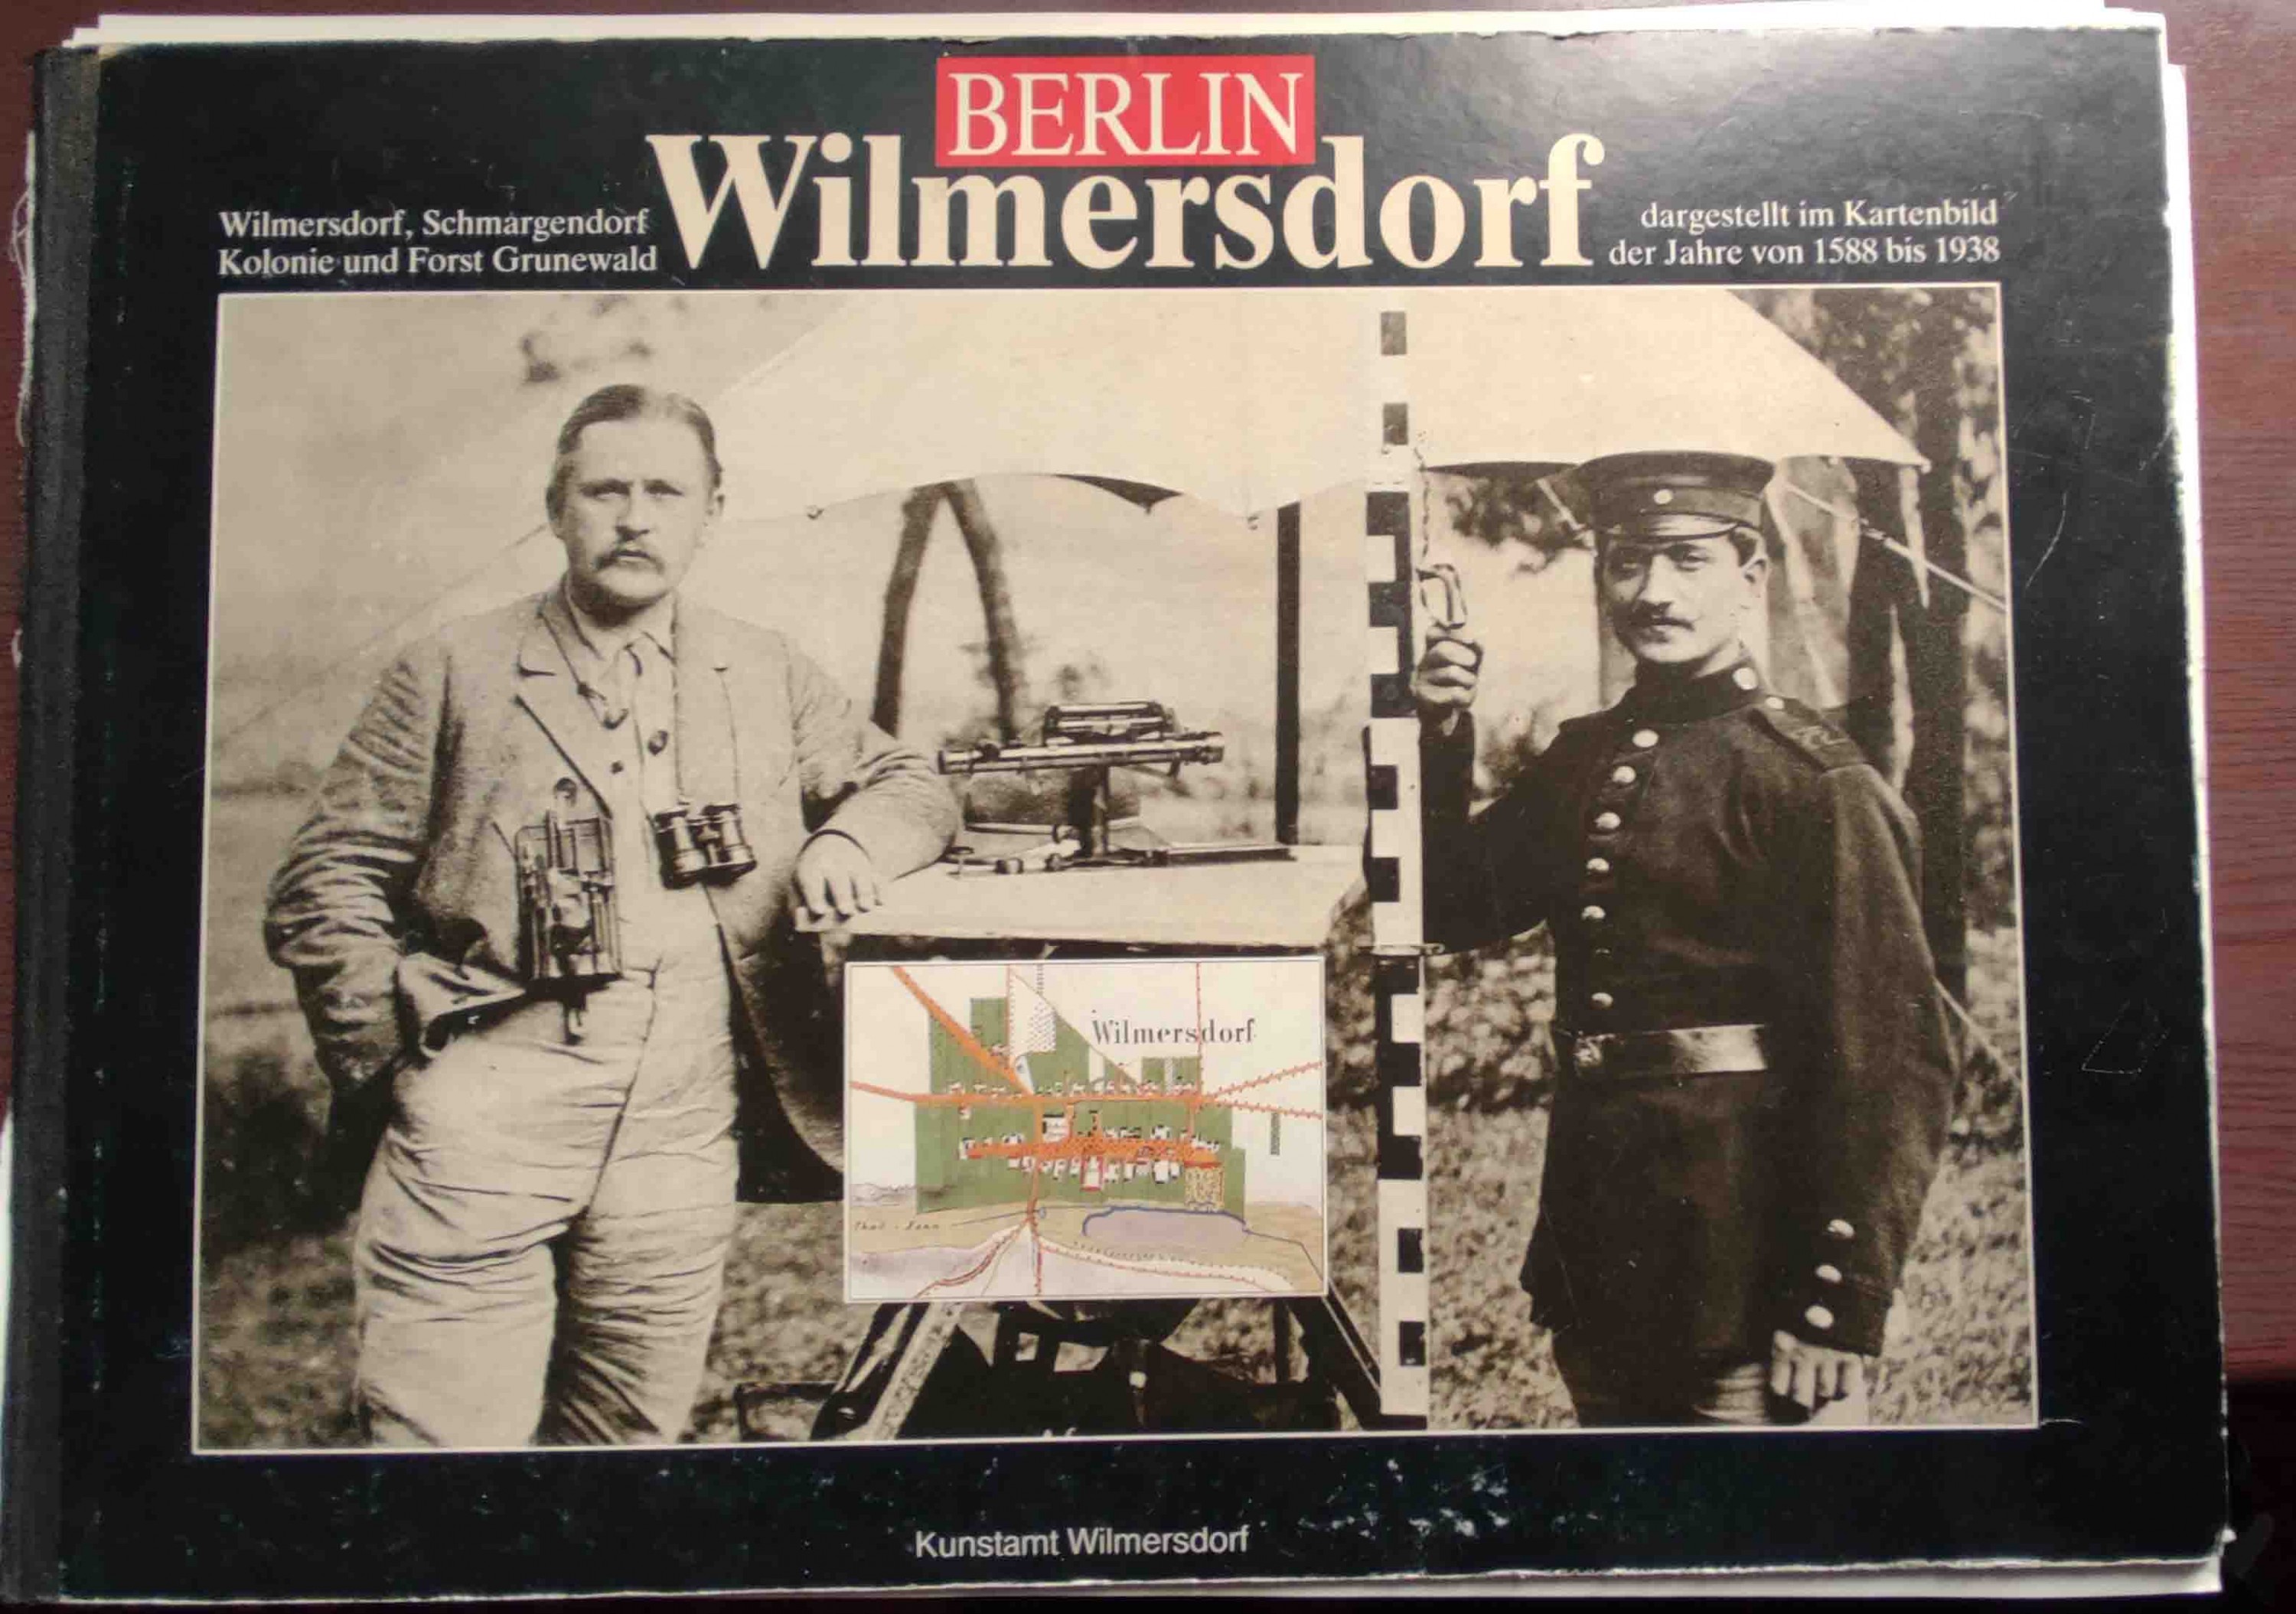 Berlin - Wilmersdorf